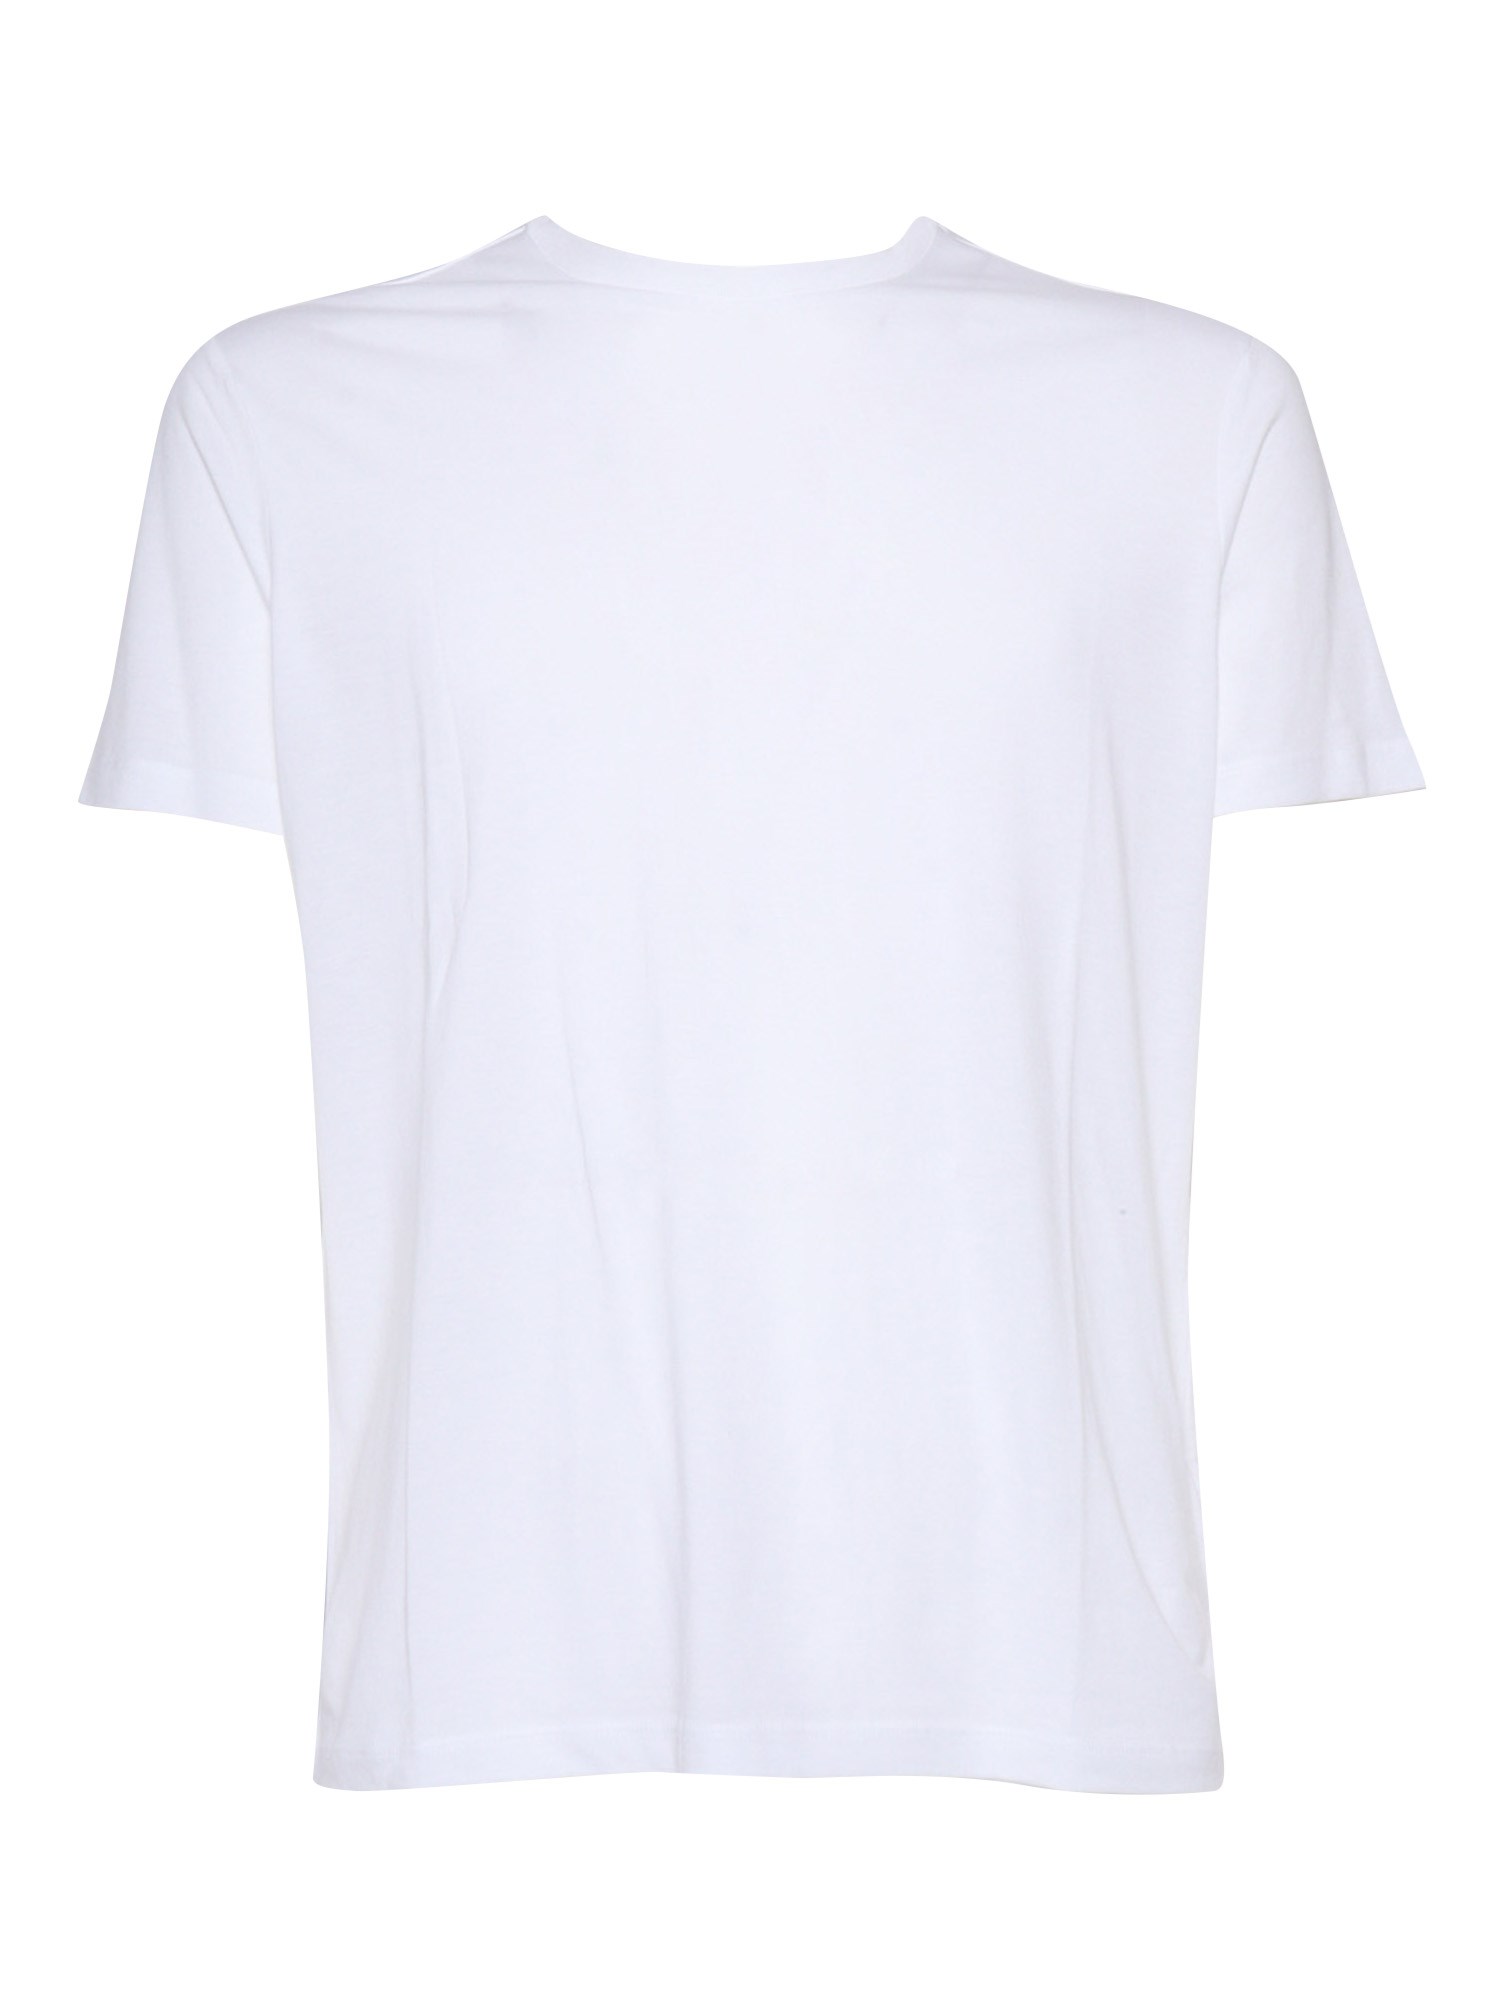 Shop Filatures Du Lion White T-shirt